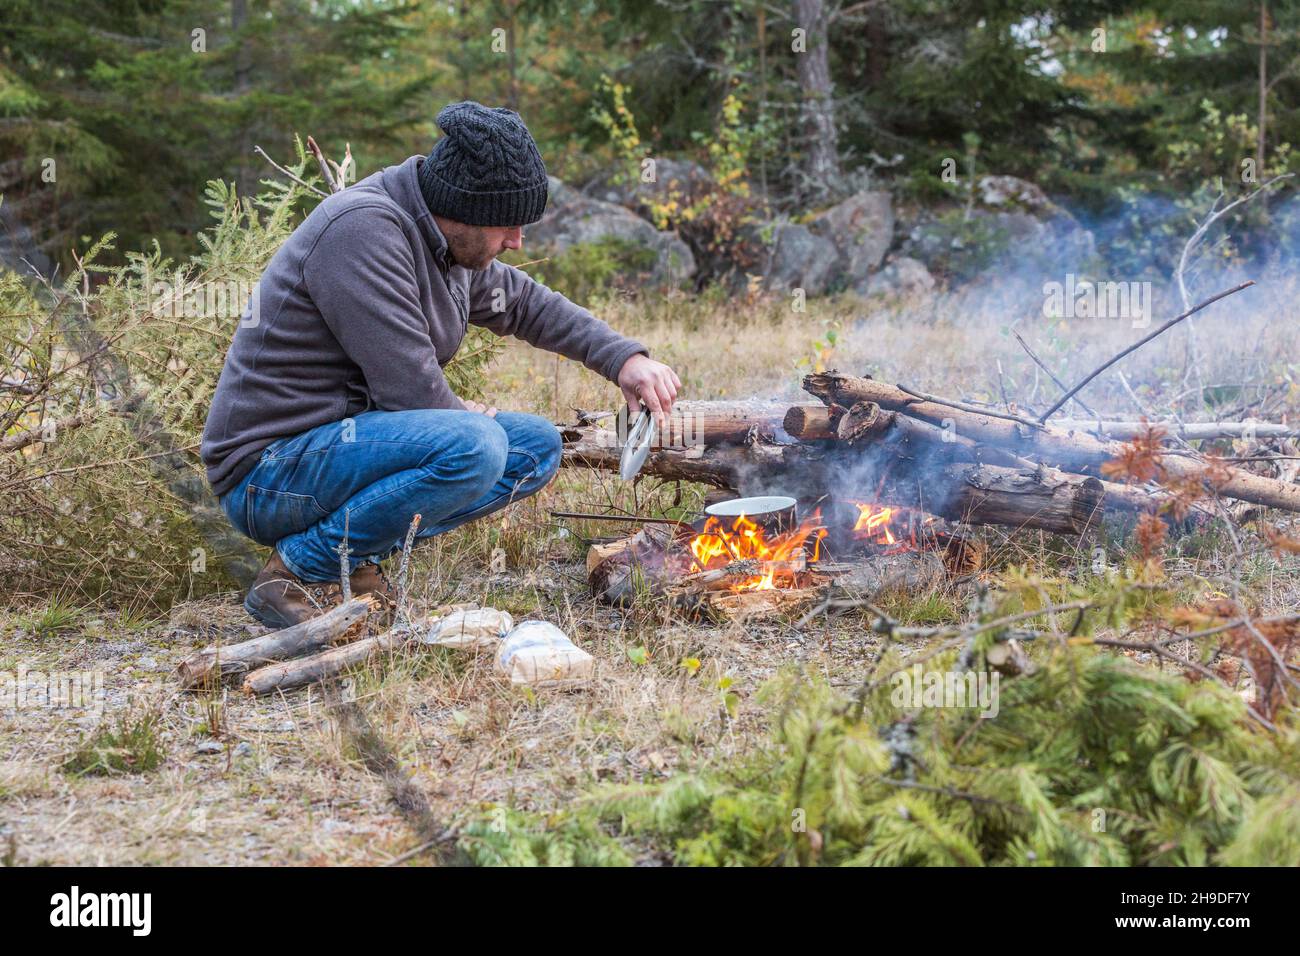 Un uomo avventuroso vestito con abiti caldi e cappello di lana cuoce il cibo su un fuoco fumante a legna con un sacco di legna pronta per fare un fuoco Foto Stock